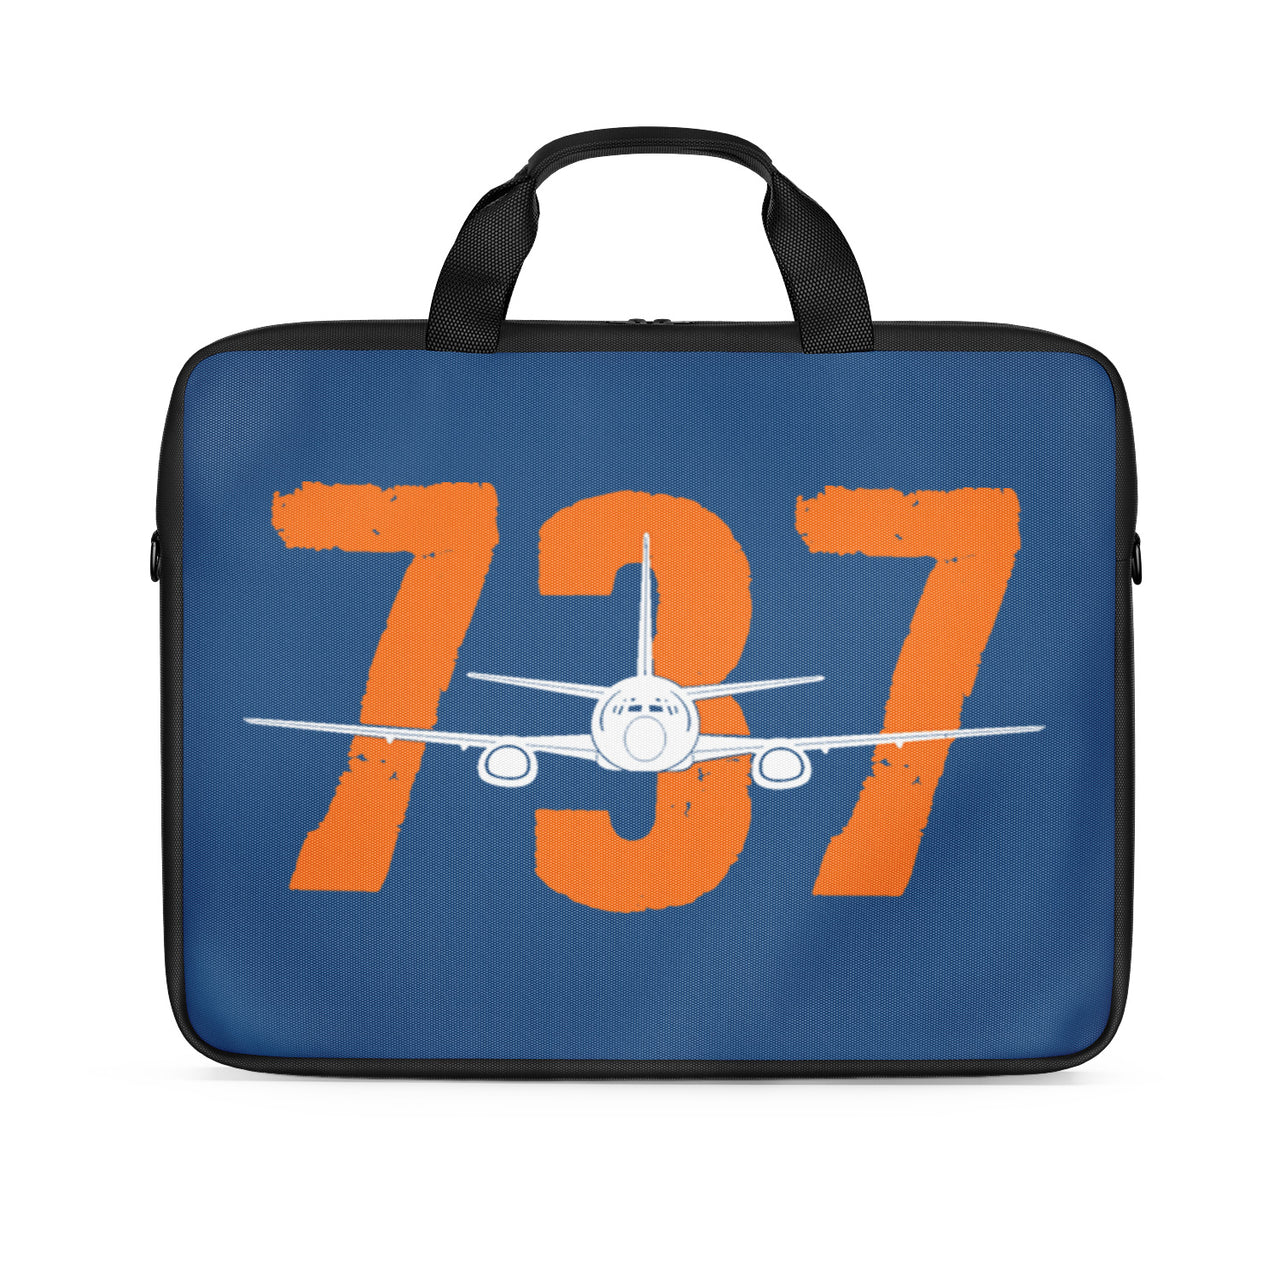 Boeing 737 Designed Designed Laptop & Tablet Bags